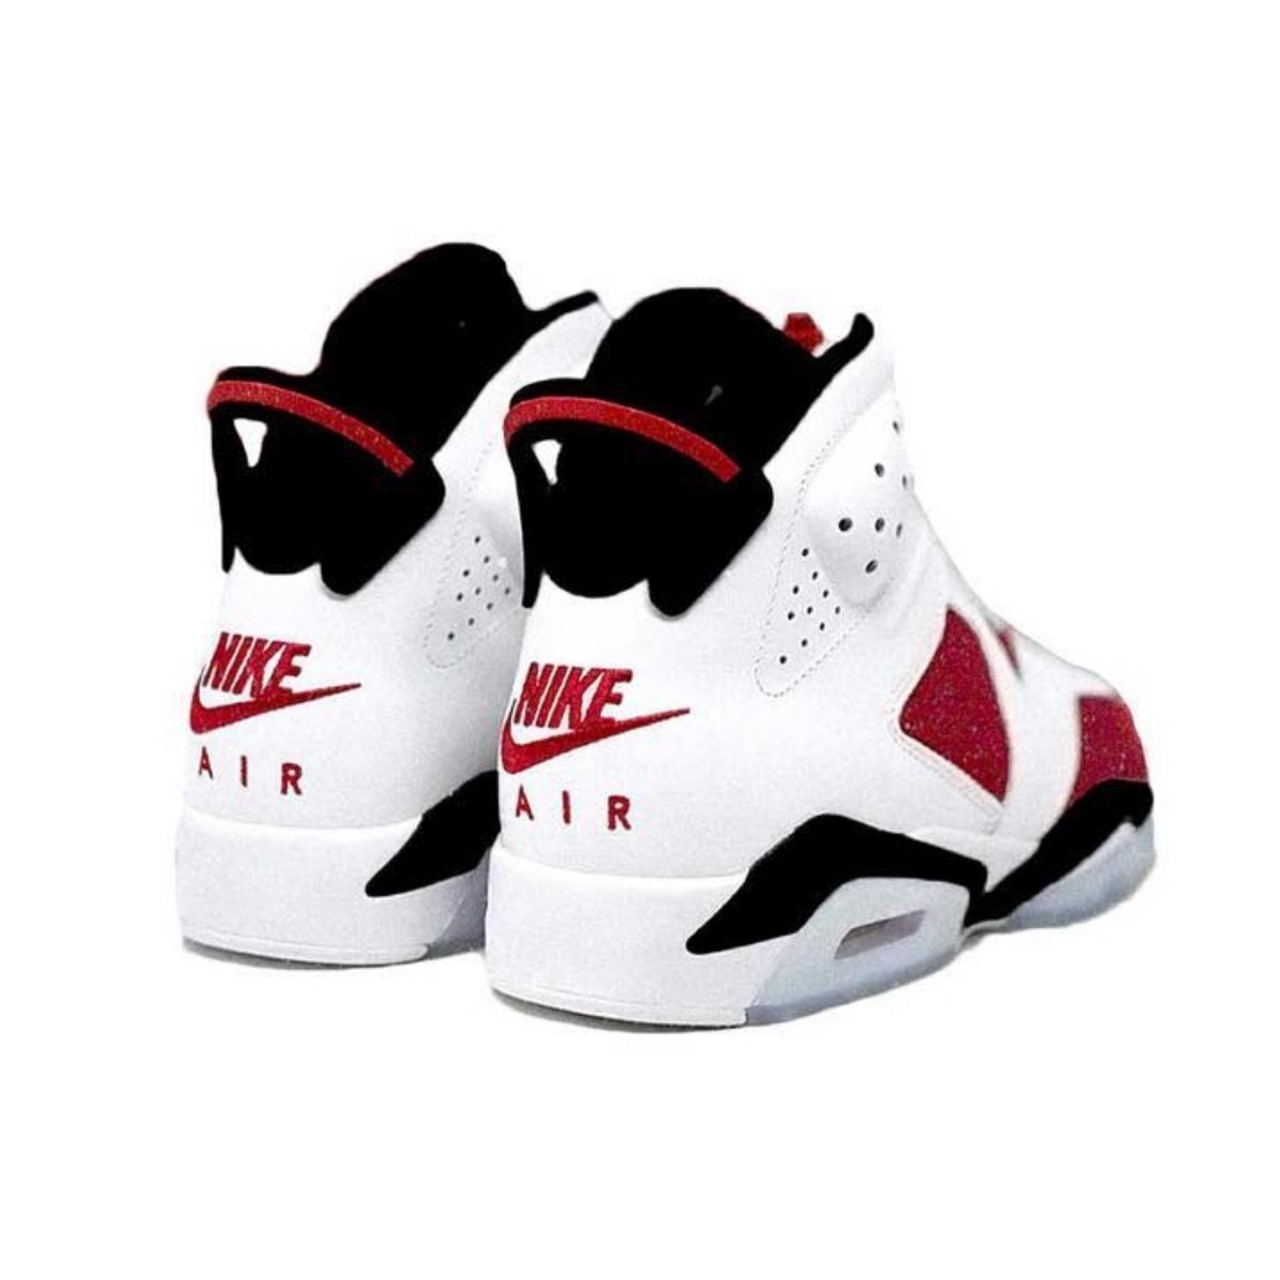 Full Look At The Air Jordan 6 Retro “Carmine”